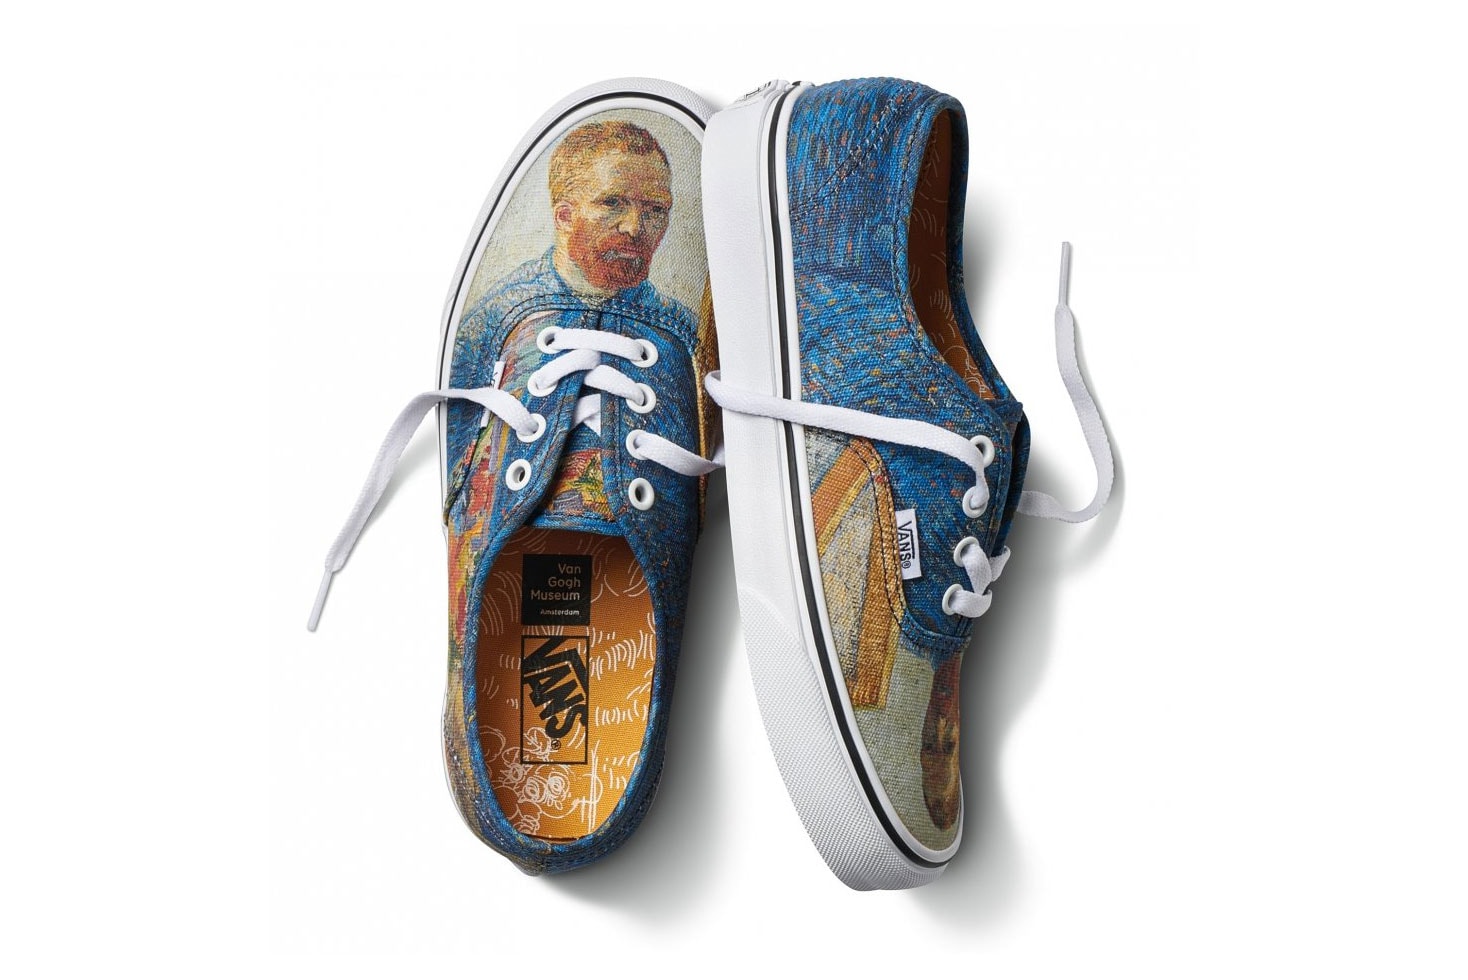 狂気の天才画家ゴッホと Vans による異色のコラボカプセルが登場 誰もが知る“ひまわり”や1888年初頭の自画像を〈Vans〉の定番フットウェア＆アパレルアイテムに投入 Vincent Van Gogh フィンセント・ヴァン・ゴッホ Vans ヴァンズ ゴッホ美術館 Old Skool Slip-On Authentic Sk8-Hi ボンバージャケット フーディ ひまわり 花咲くアーモンドの木の枝 Skull in Profile HYPEBEAST ハイプビースト